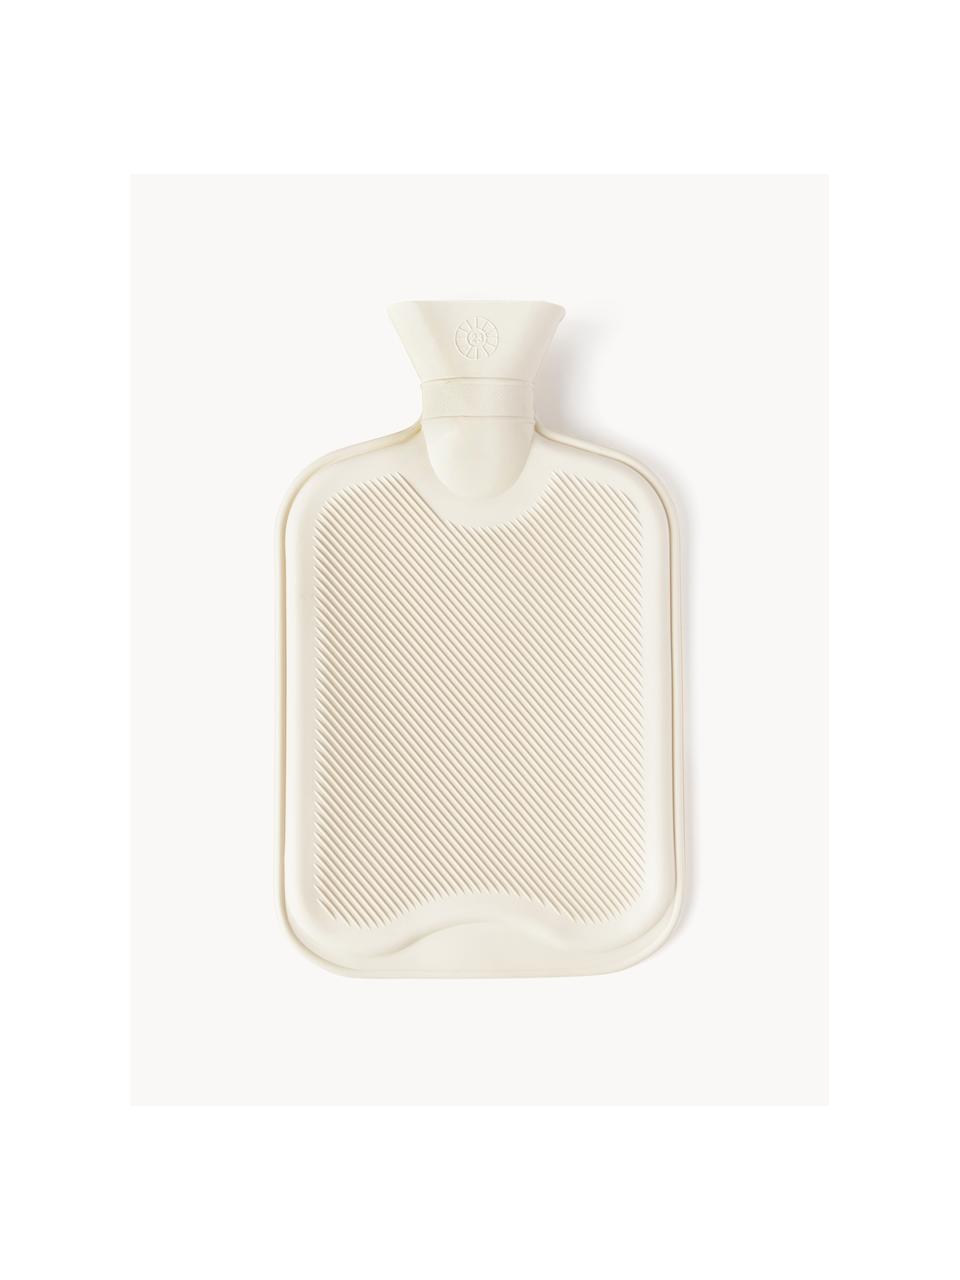 Bouillotte Rubber Bottle, 100 % caoutchouc, Blanc cassé, larg. 20 x long. 32 cm